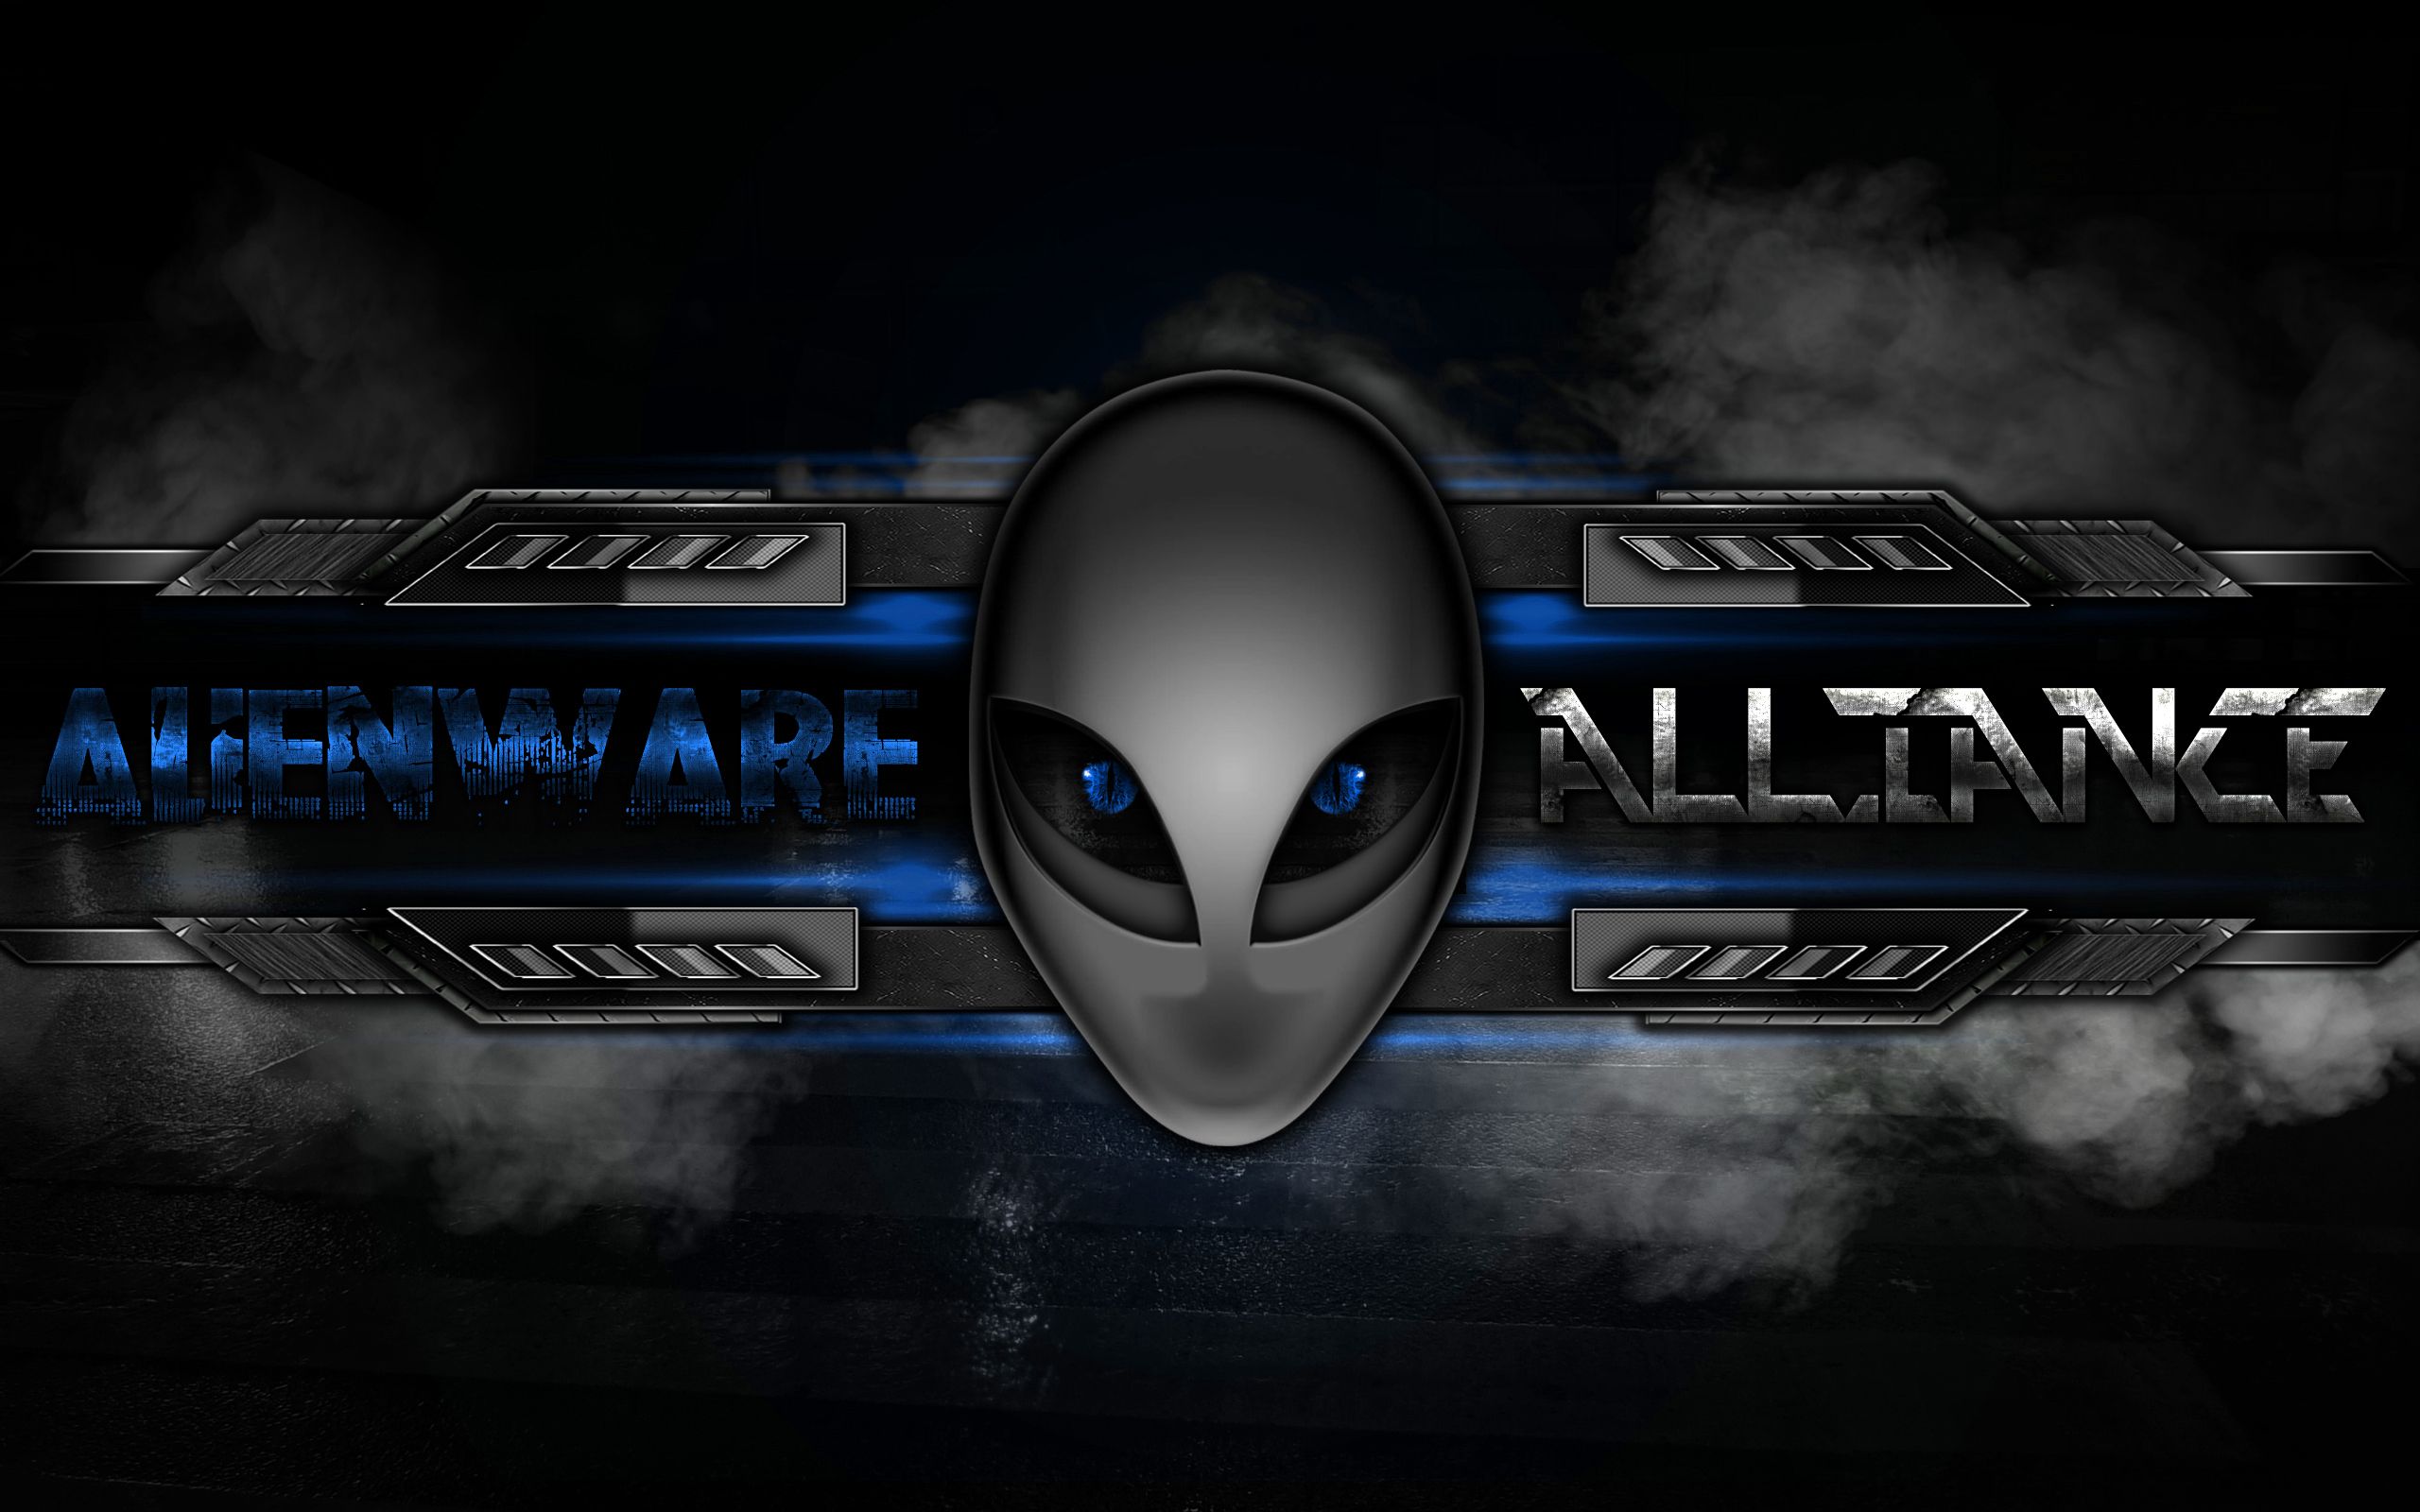 Alienware Hd 4K Wallpapers